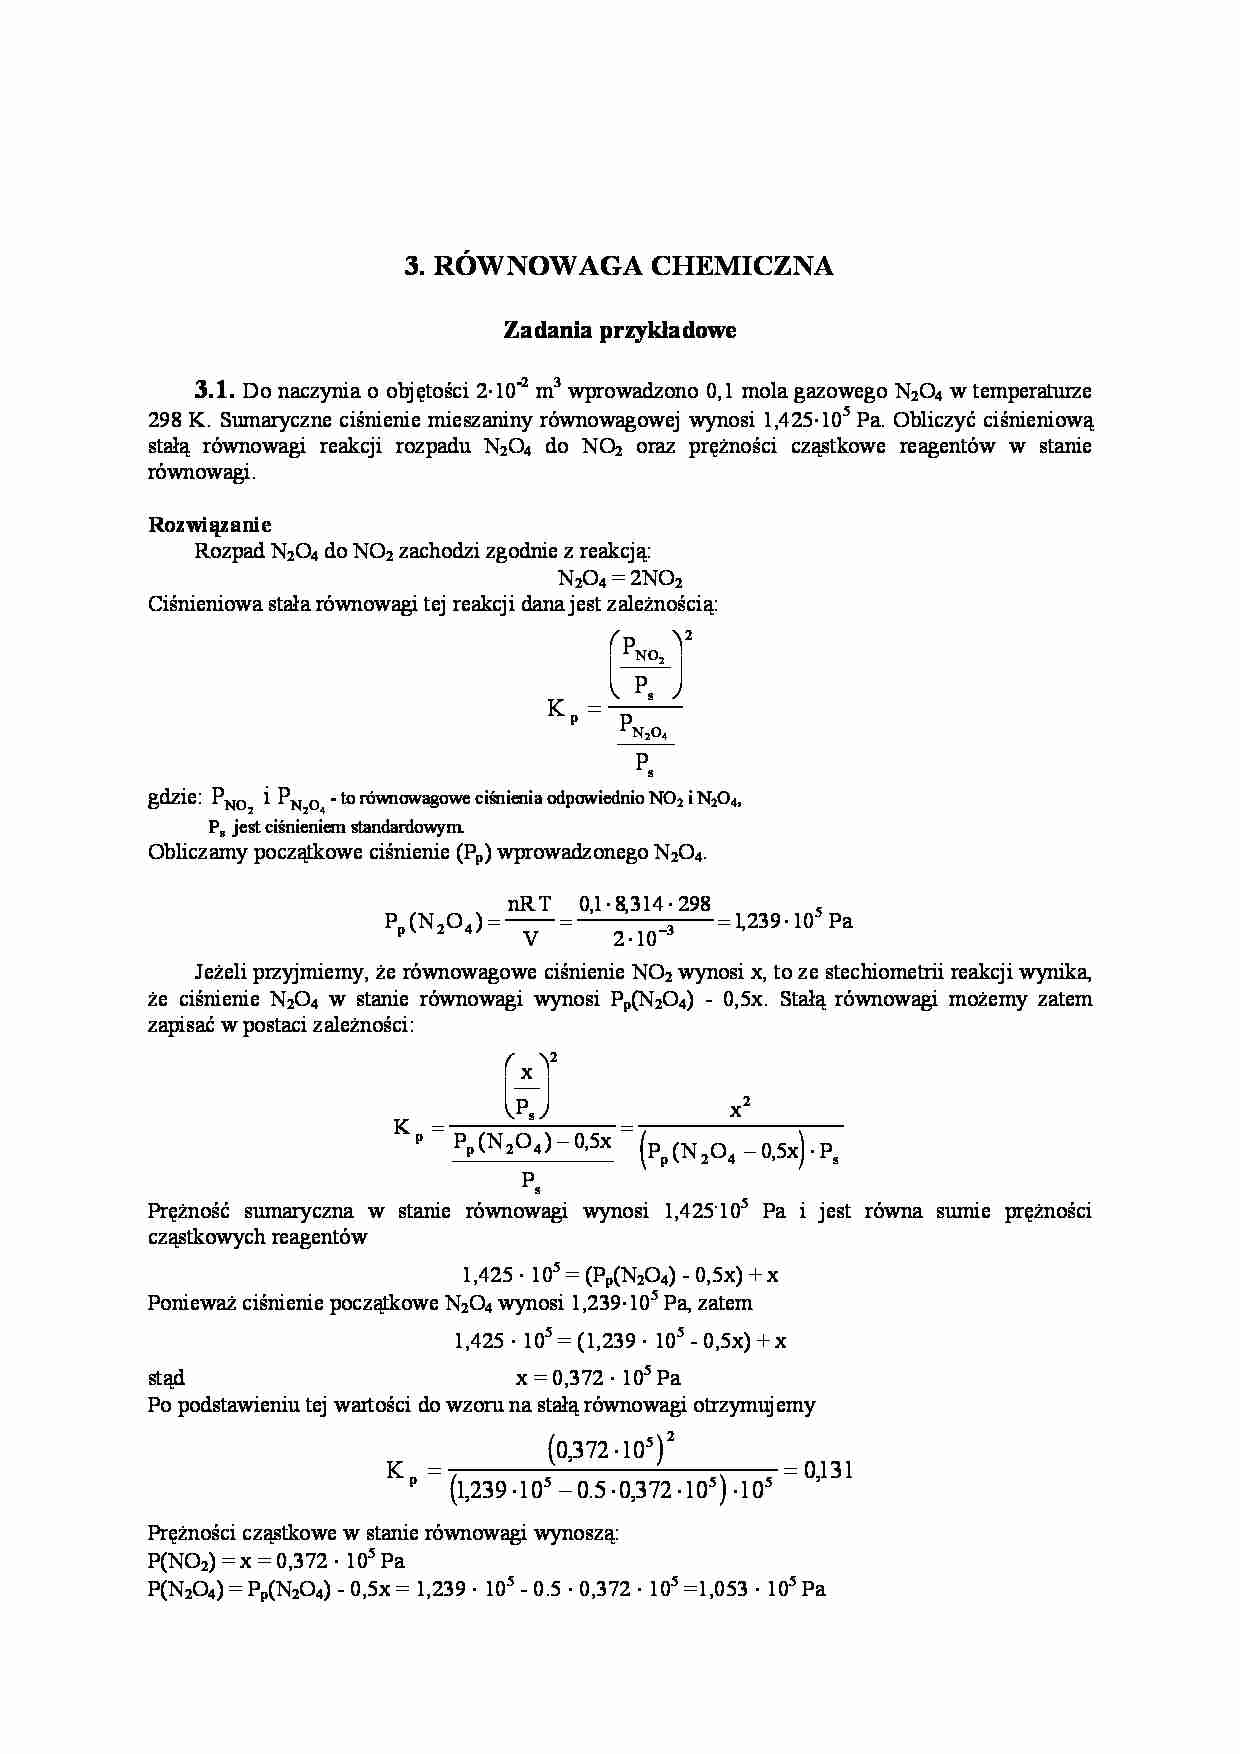 RÓWNOWAGA CHEMICZNA - zadania z rozwiązaniami - strona 1